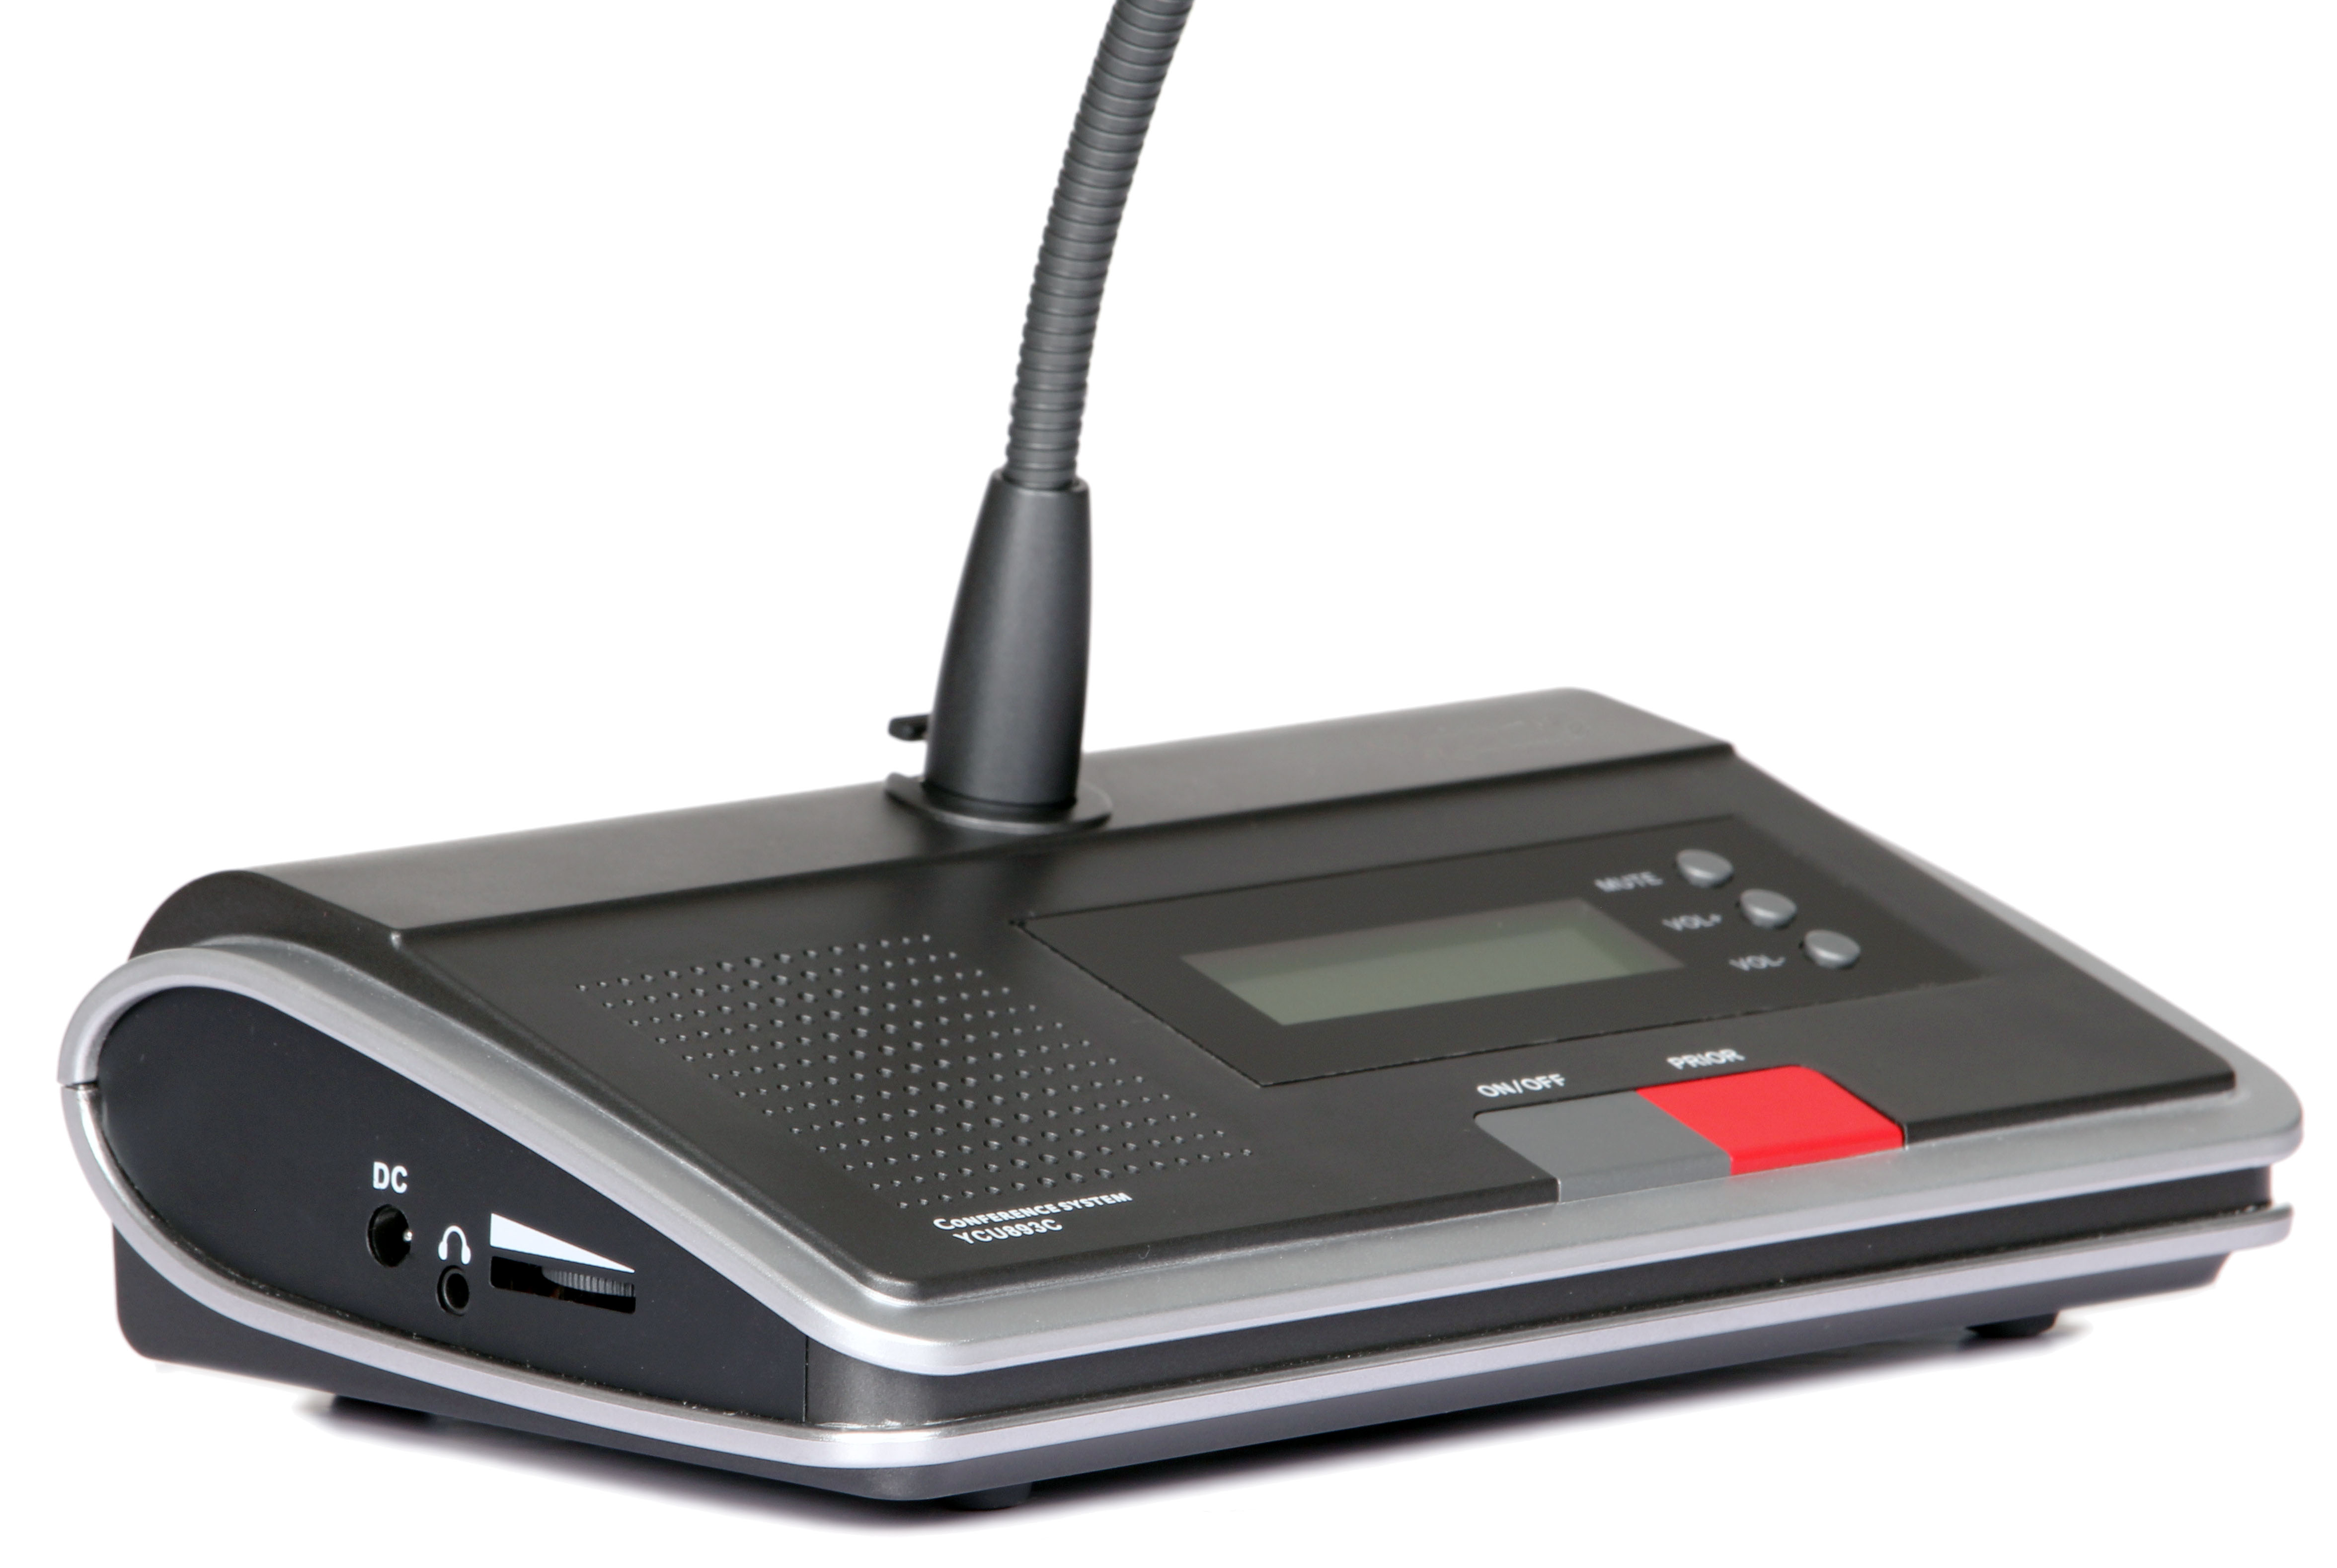 Haut-parleur – Micro – sans fil pour visioconférence – Threecomp